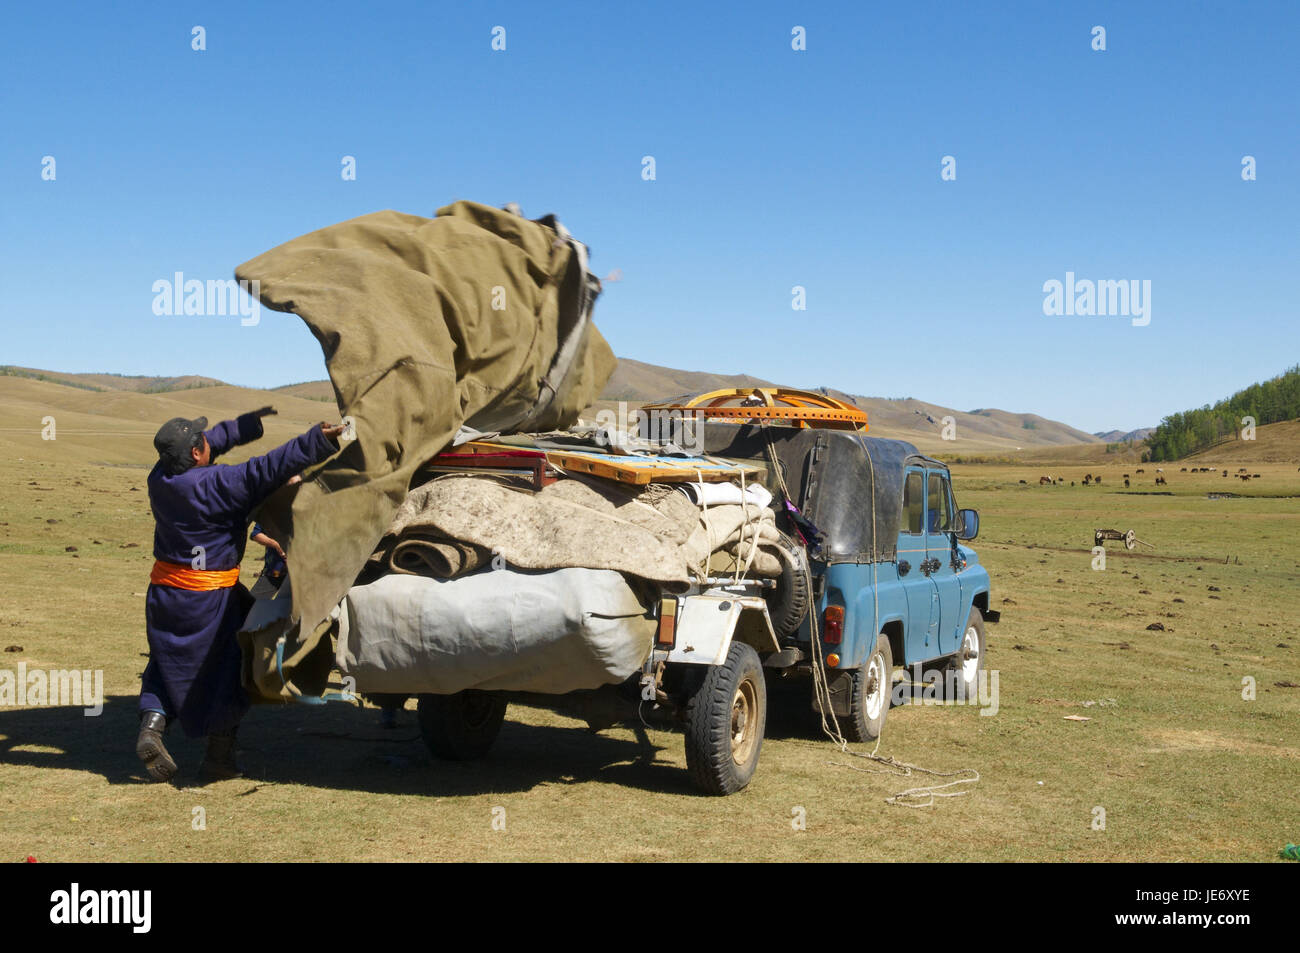 La Mongolie, l'Asie centrale, la province Arkhangai, NOMAD, support, Jurte échouent, la charge du véhicule, Banque D'Images